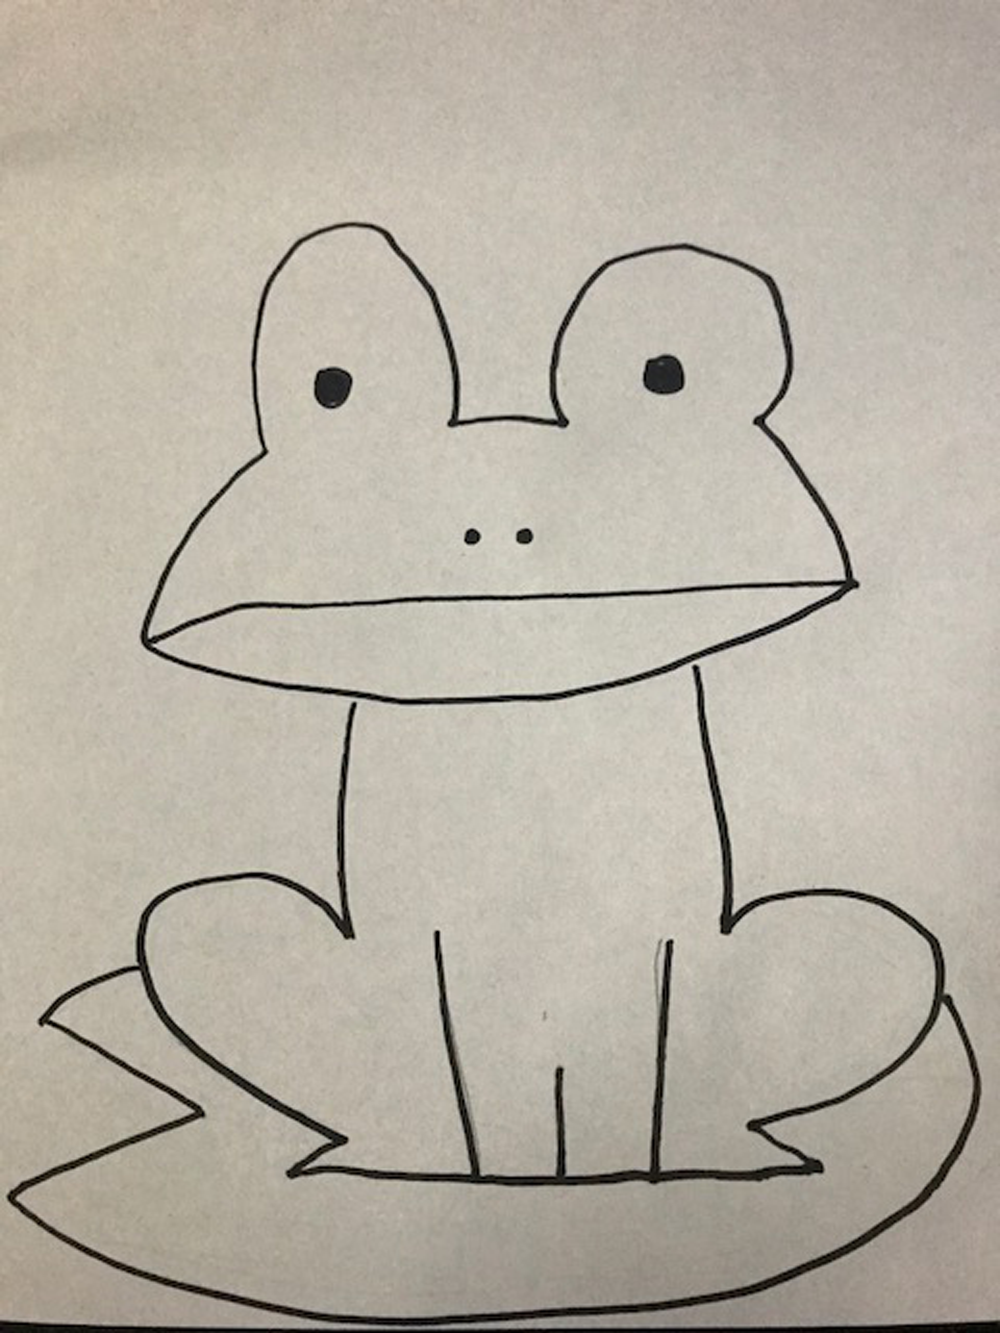 カエル嫌いの人にこそ知って欲しい クランウェルツノガエルの魅力 内藤 東京のレンタル水槽 アクアリウムの会社uws